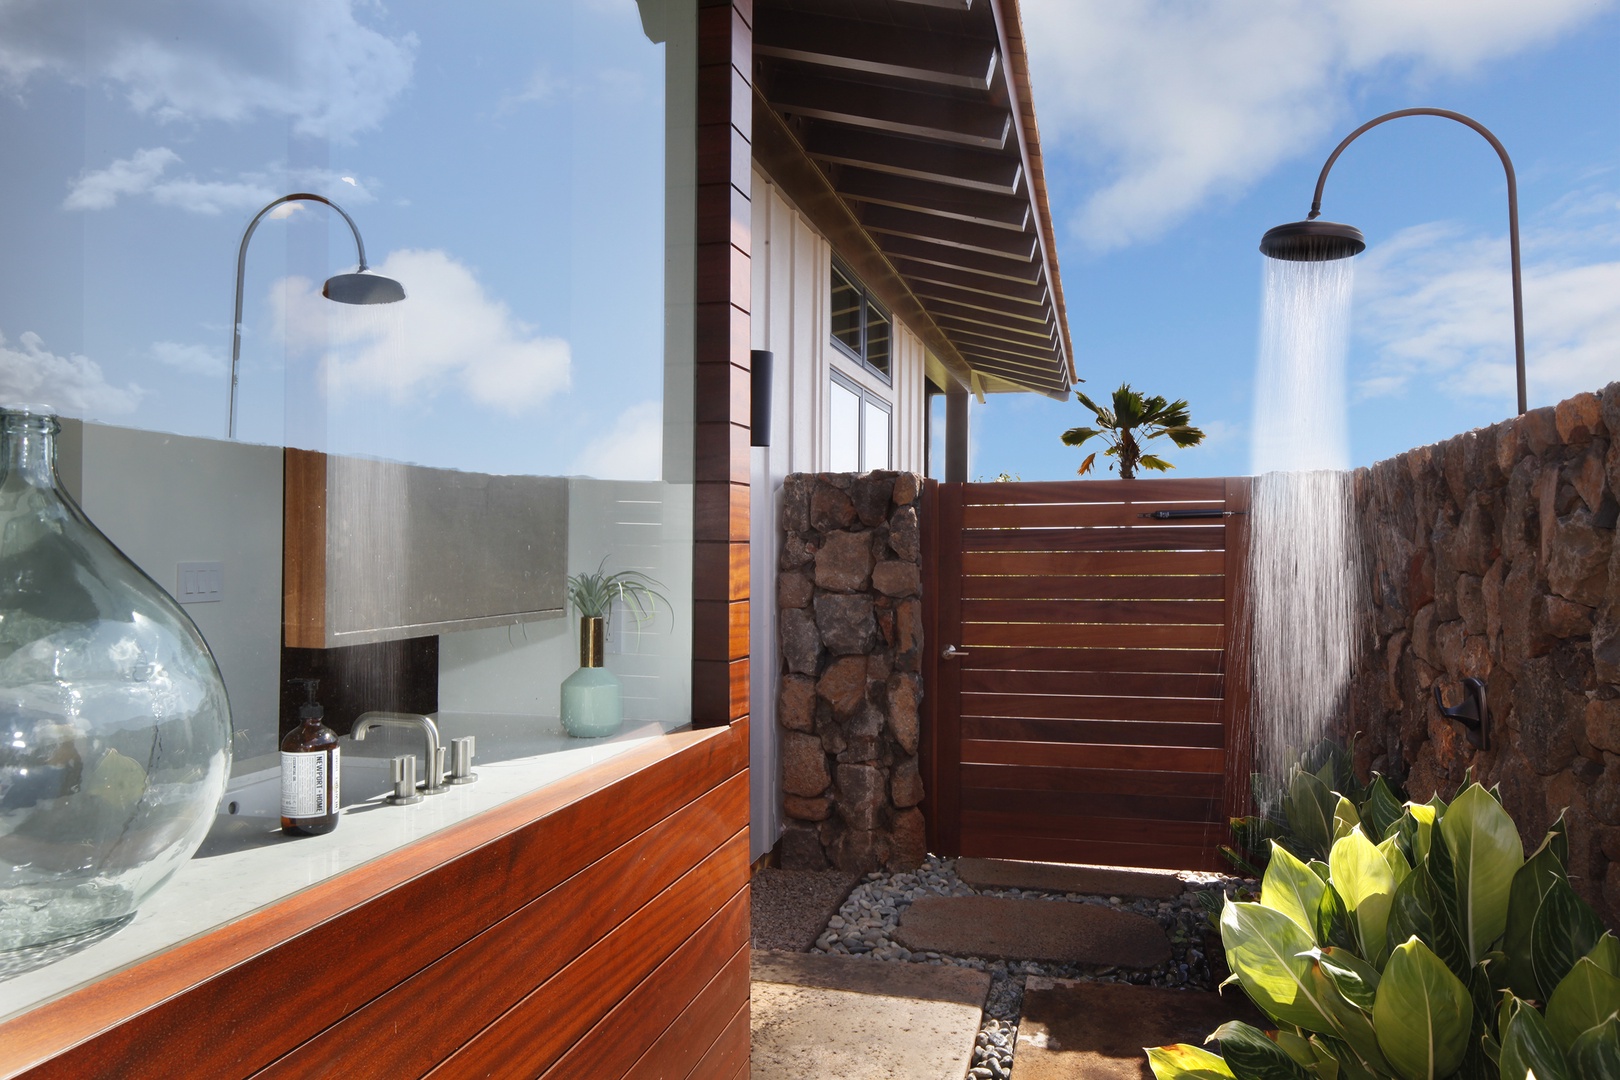 Koloa Vacation Rentals, Hale Pomaika'i Mau - Primary bathroom outdoor shower